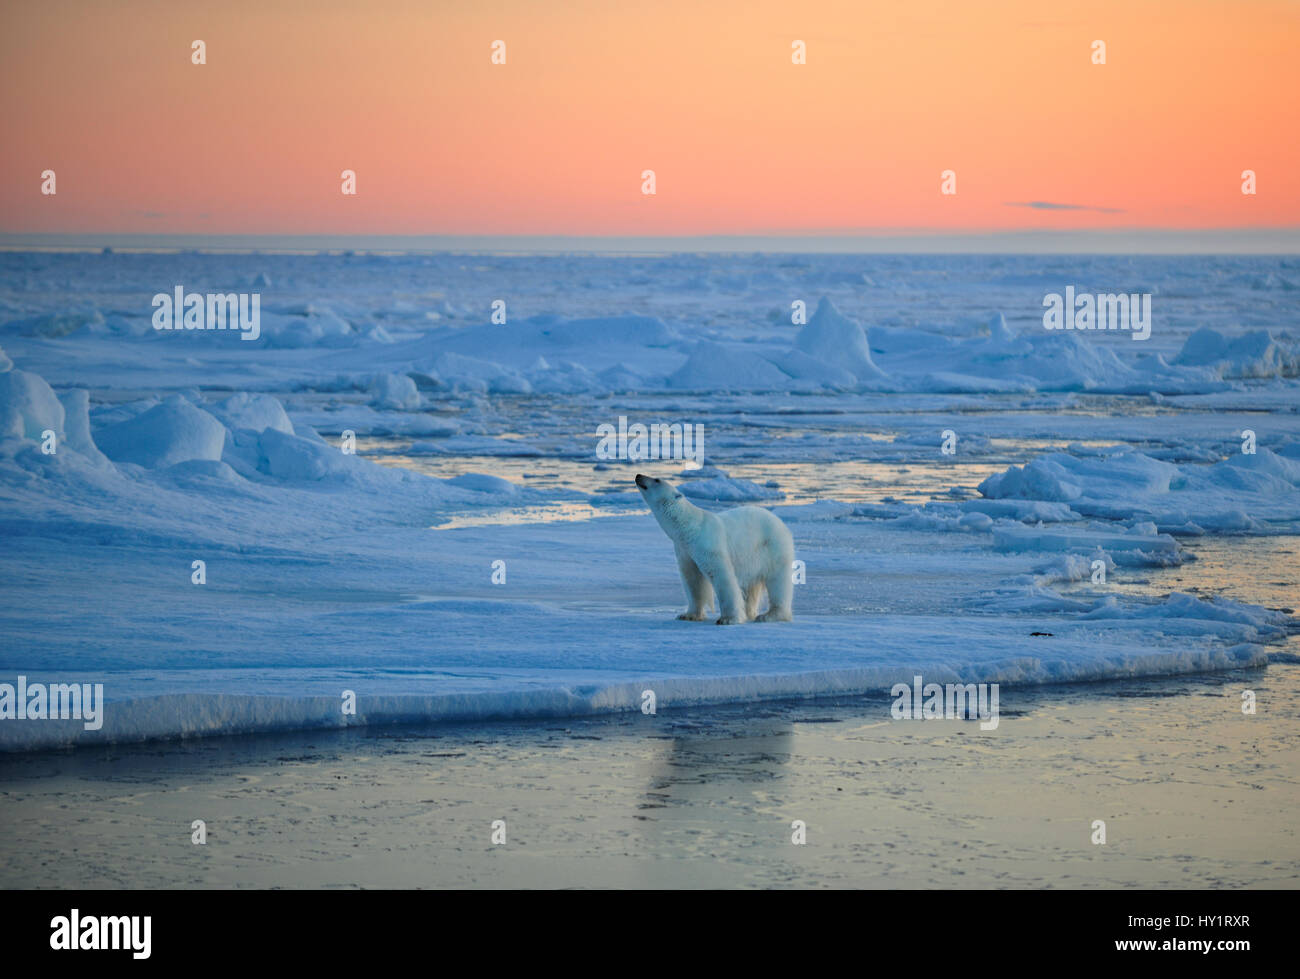 RF - Eisbär (Ursus Maritimus) auf Packeis, schnuppern bei Sonnenuntergang, Spitzbergen, Norwegen, September 2009. Vom Aussterben bedrohte Arten. Stockfoto